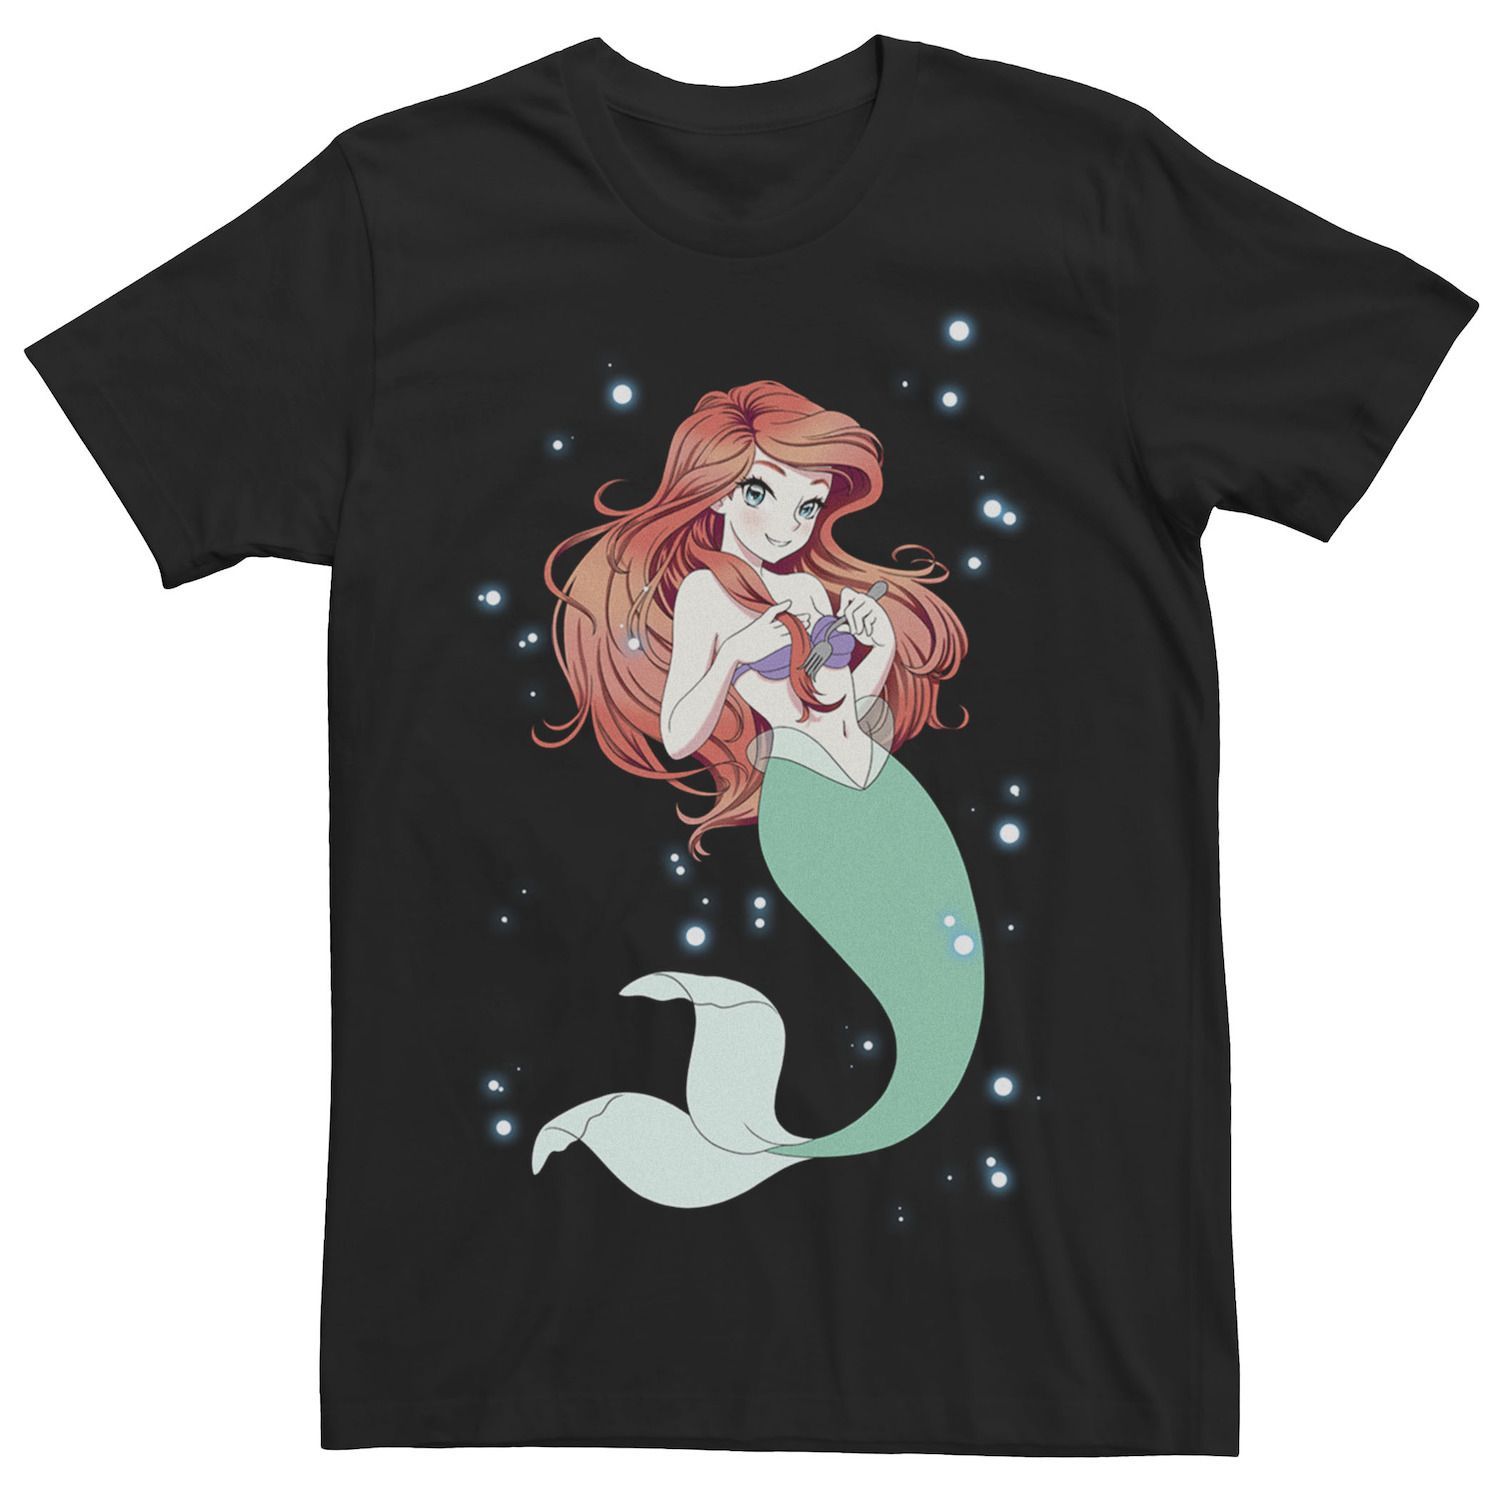 Мужская футболка Disney The Little Mermaid Anime Ariel